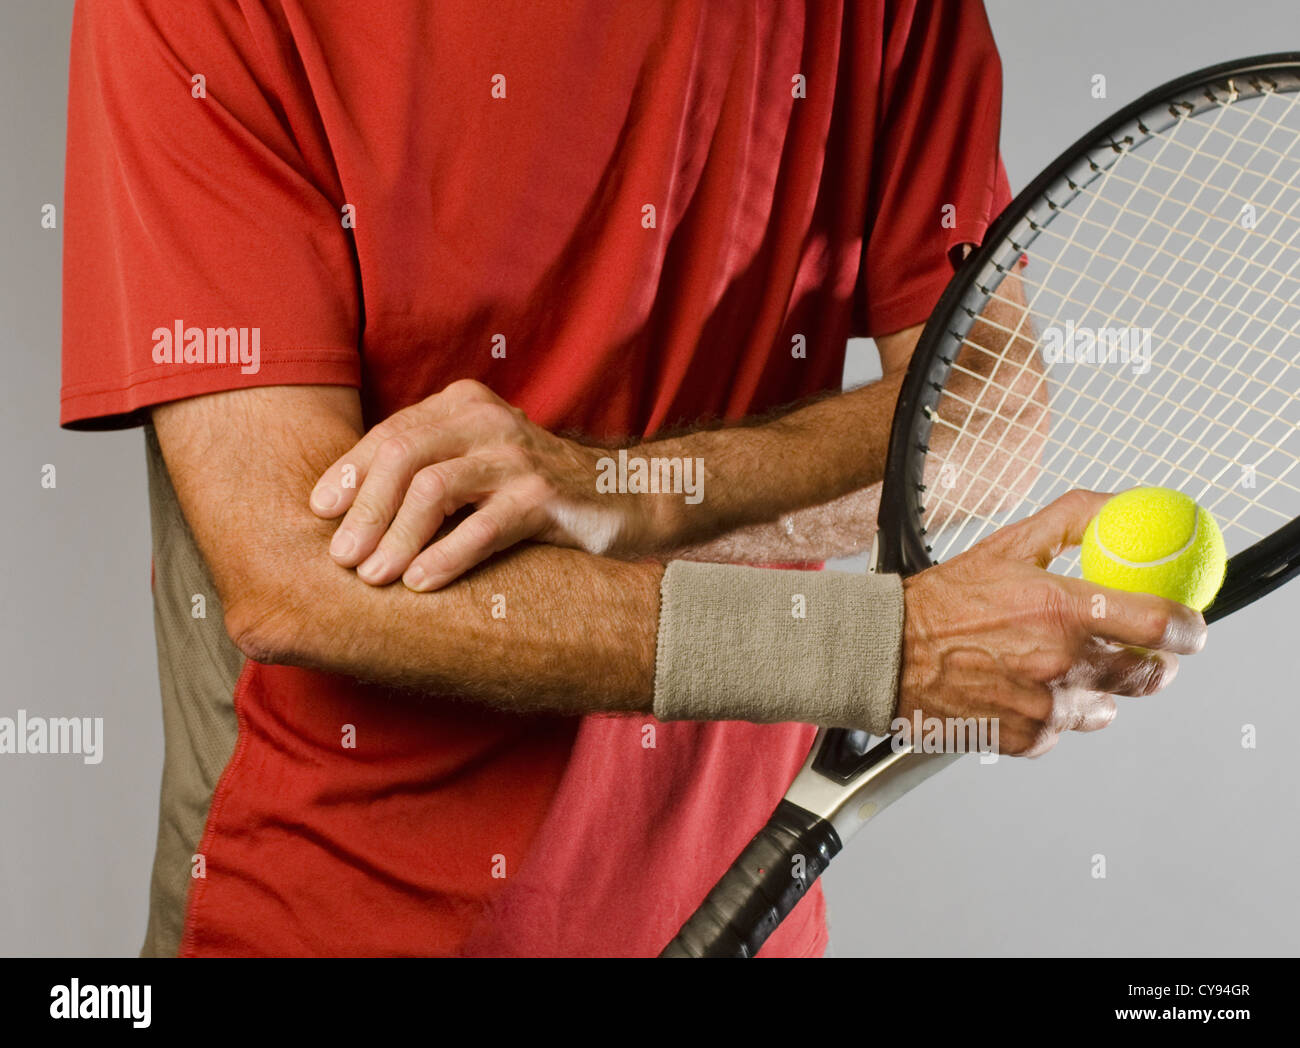 Joueur de tennis avec tennis elbow Banque D'Images